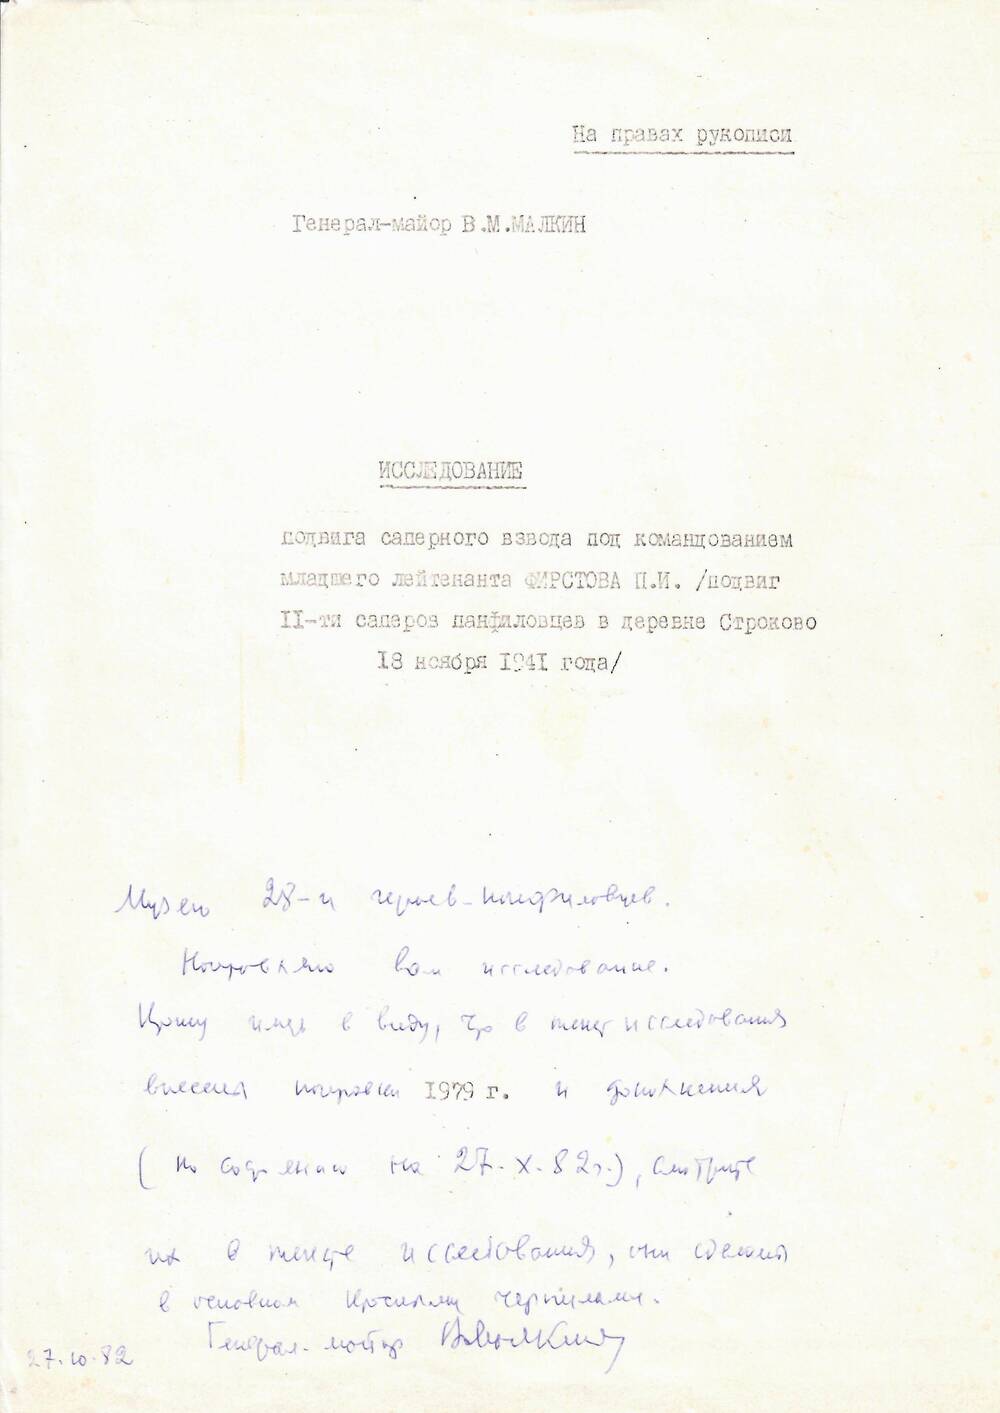 Исследование бывшего комиссара батальона 1077 стр. полка генерал-майора В. М. Малкина, 1982 г.